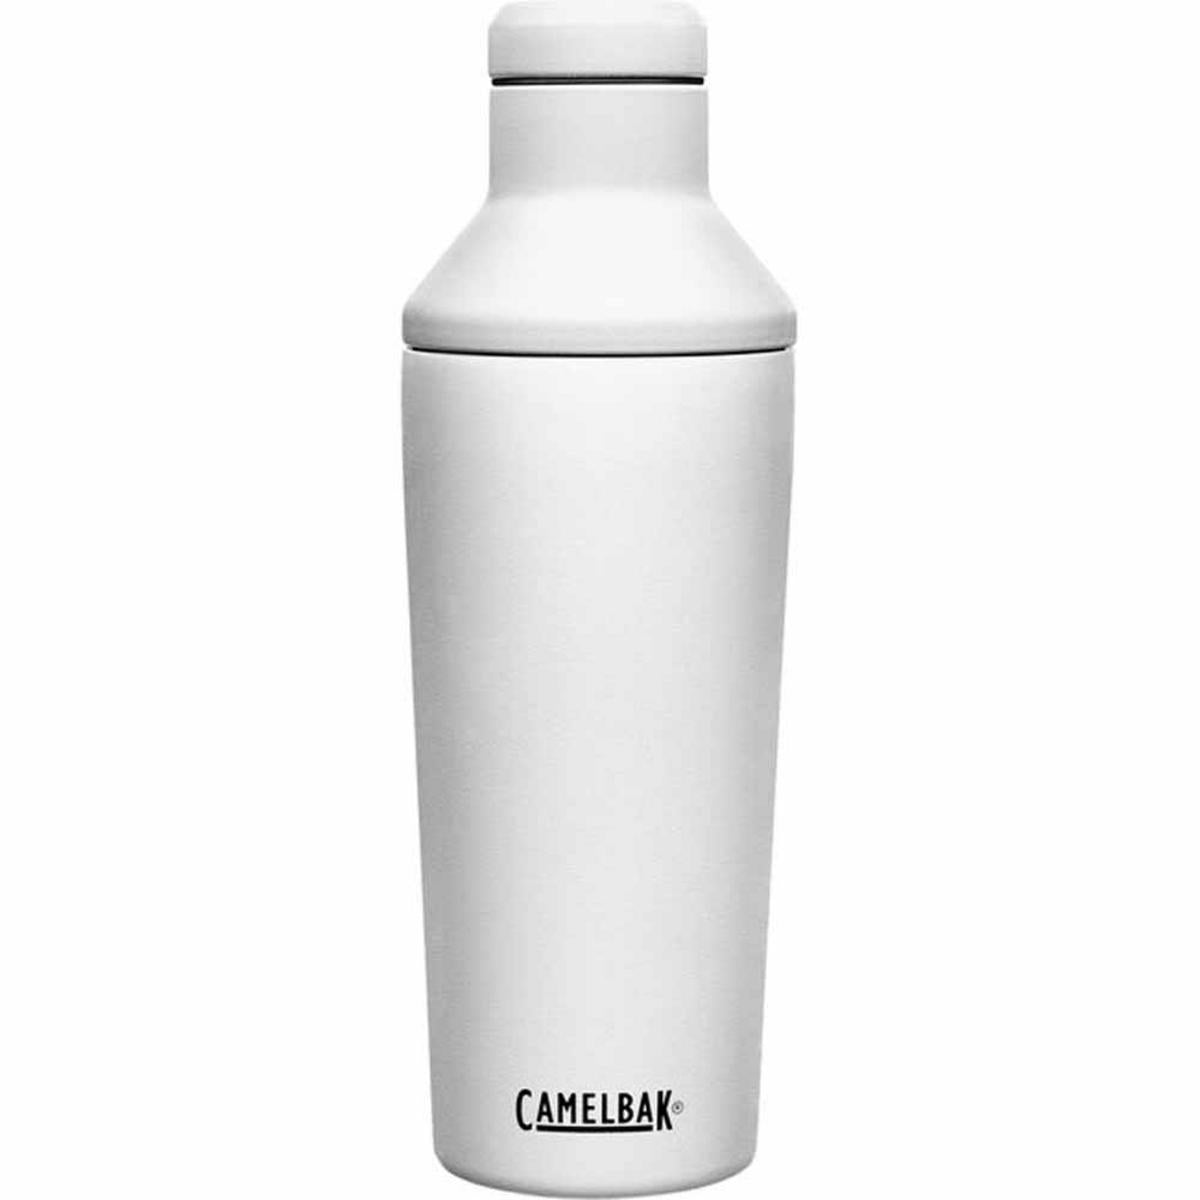 Camelbak Horizon Leak-Proof 20oz Insulated Stainless Steel Cocktail Shaker